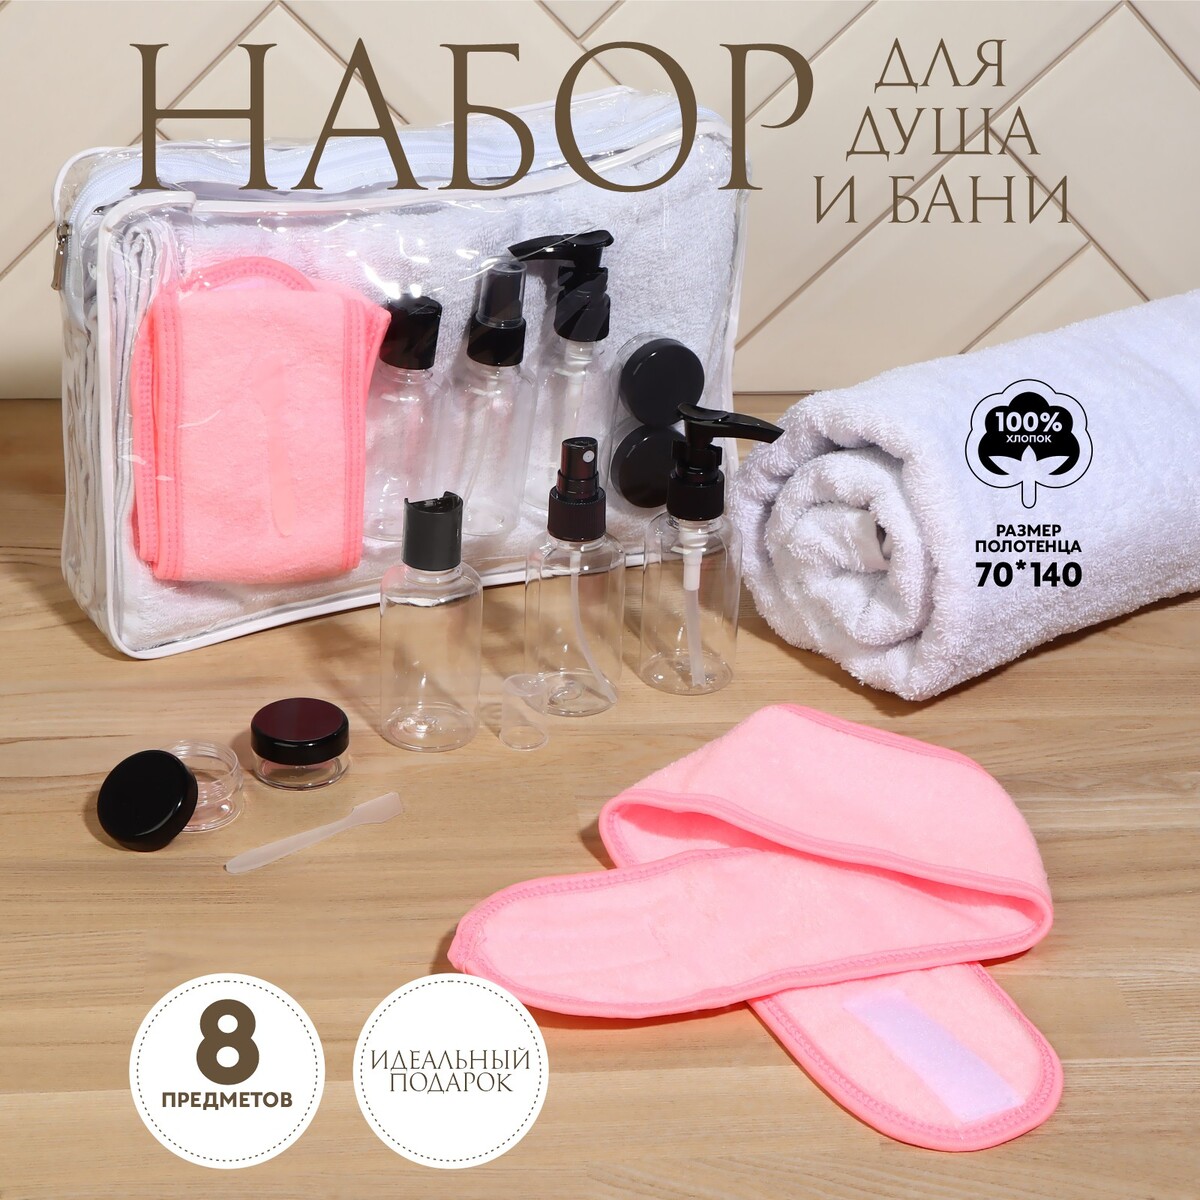 Набор банный, в косметичке, 8 предметов (полотенце 70 × 140 см, бутылочки 3 шт, баночки 2 шт, повязка на голову, лопатка) , цвет белый/розовый набор кухонный подставка полотенце